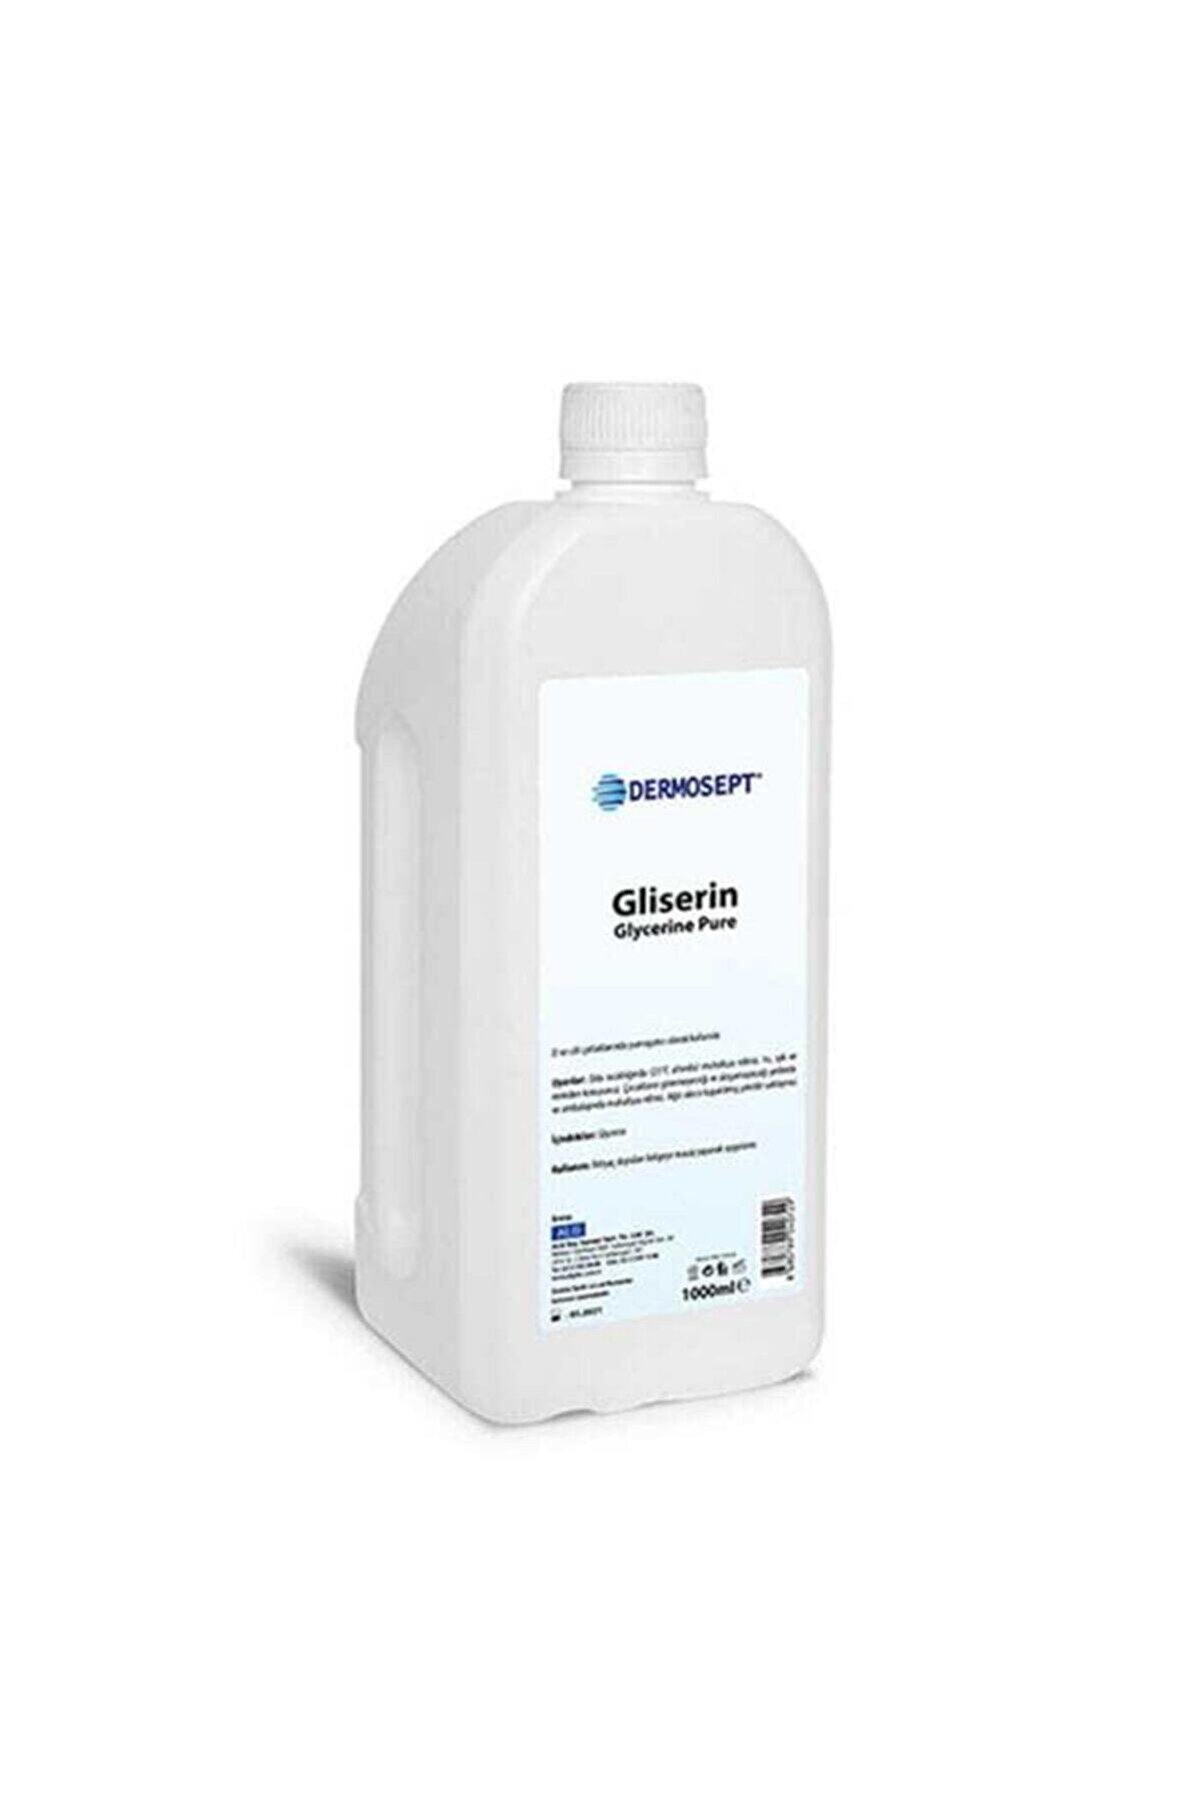 Dermosept Gliserin 1000 ml